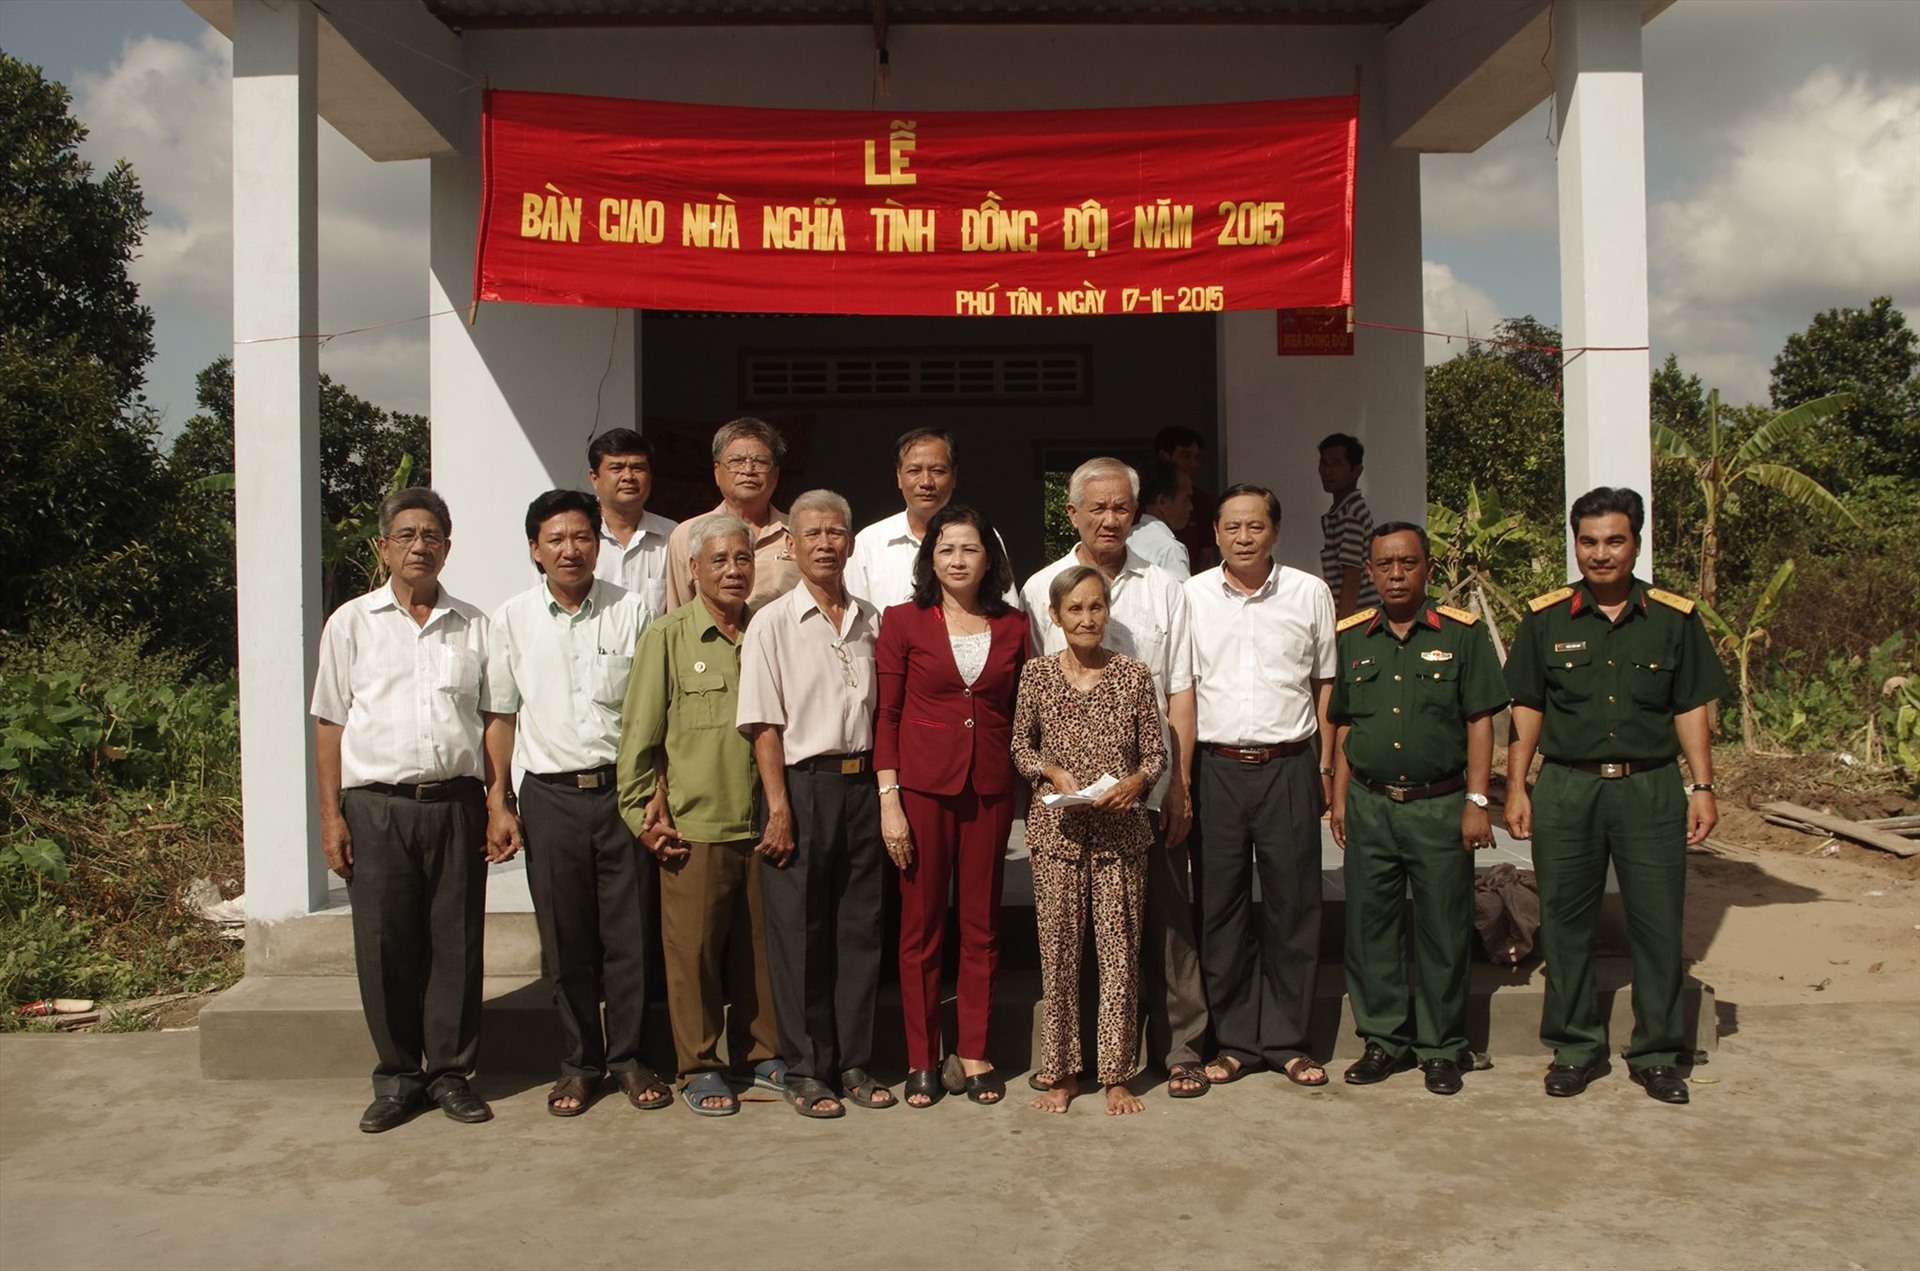 Lễ bàn giao một căn nhà tình nghĩa đồng đội do Thiếu tướng Lê Thanh Sơn vận động. Ảnh: Nguyễn Thắng.